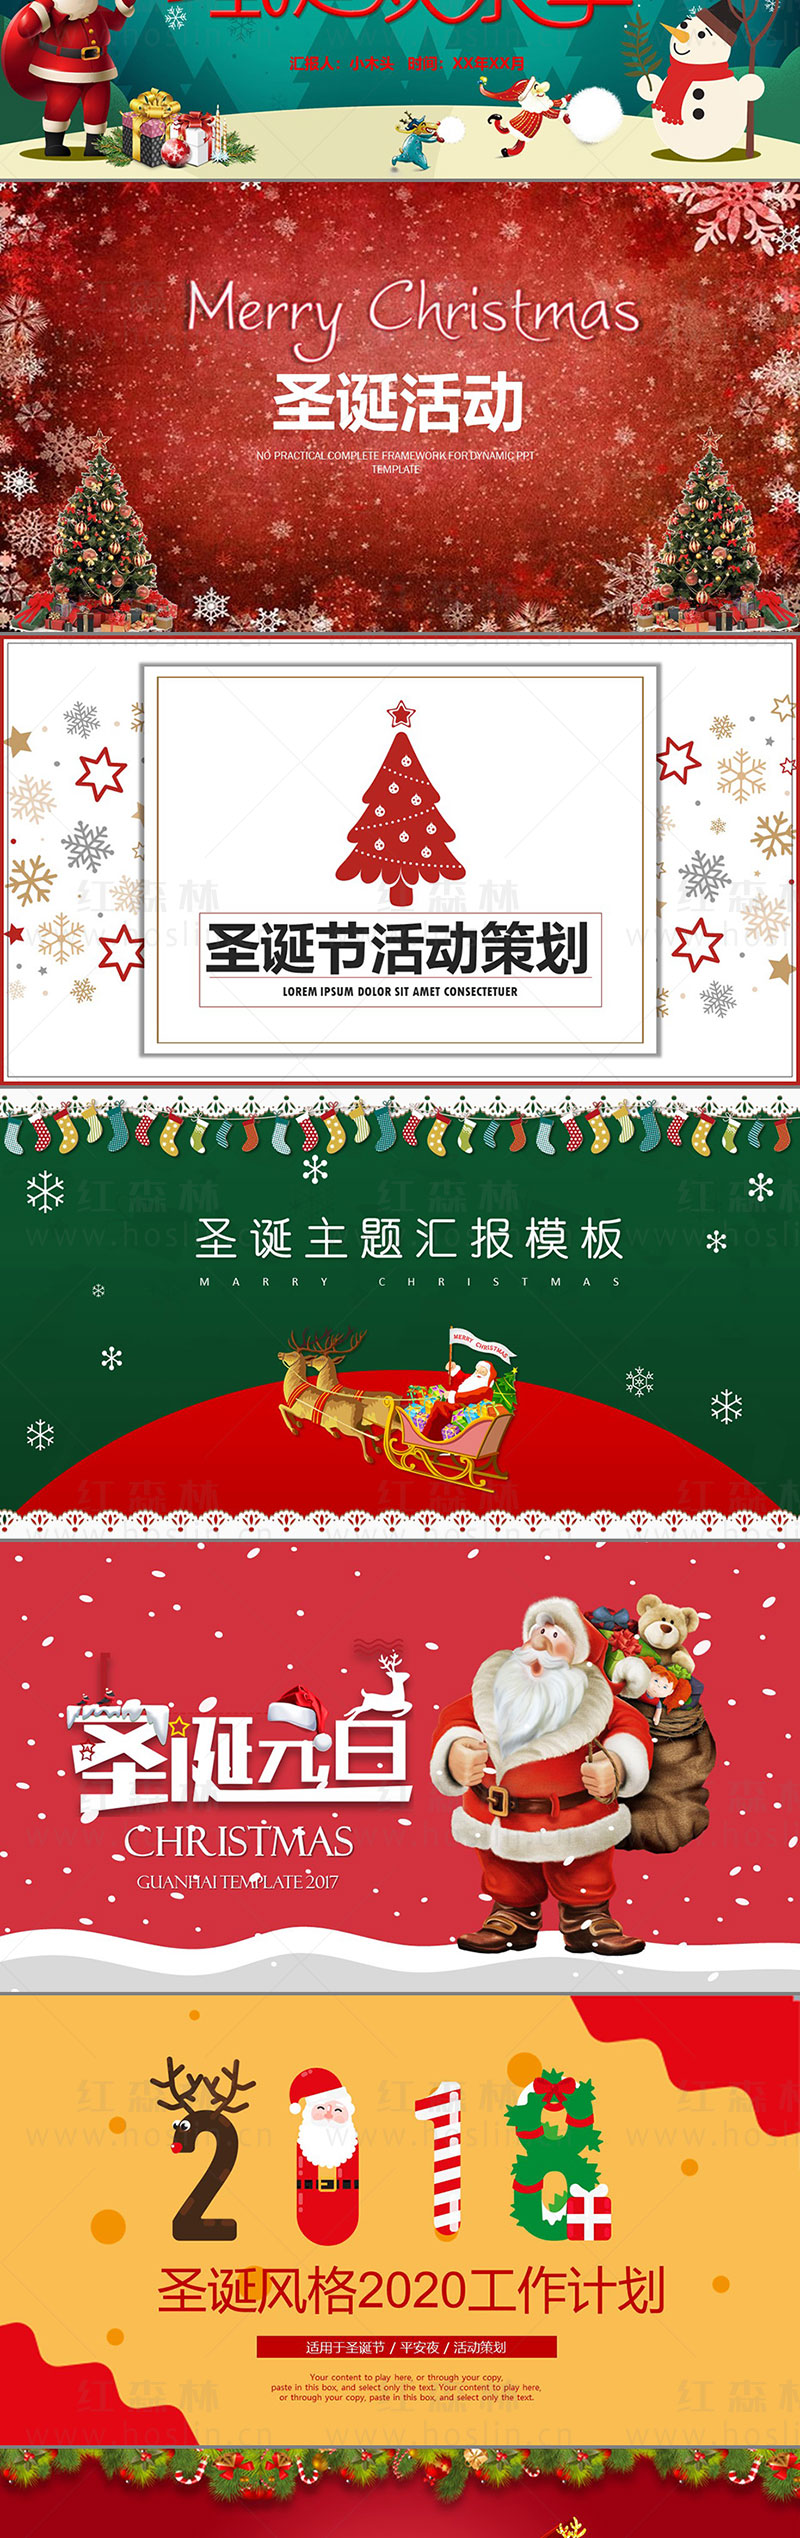 【PPT模板】时尚大气圣诞节日麋鹿圣诞老人欢乐活动策划年度总结PPT动态模板素材插图(3)